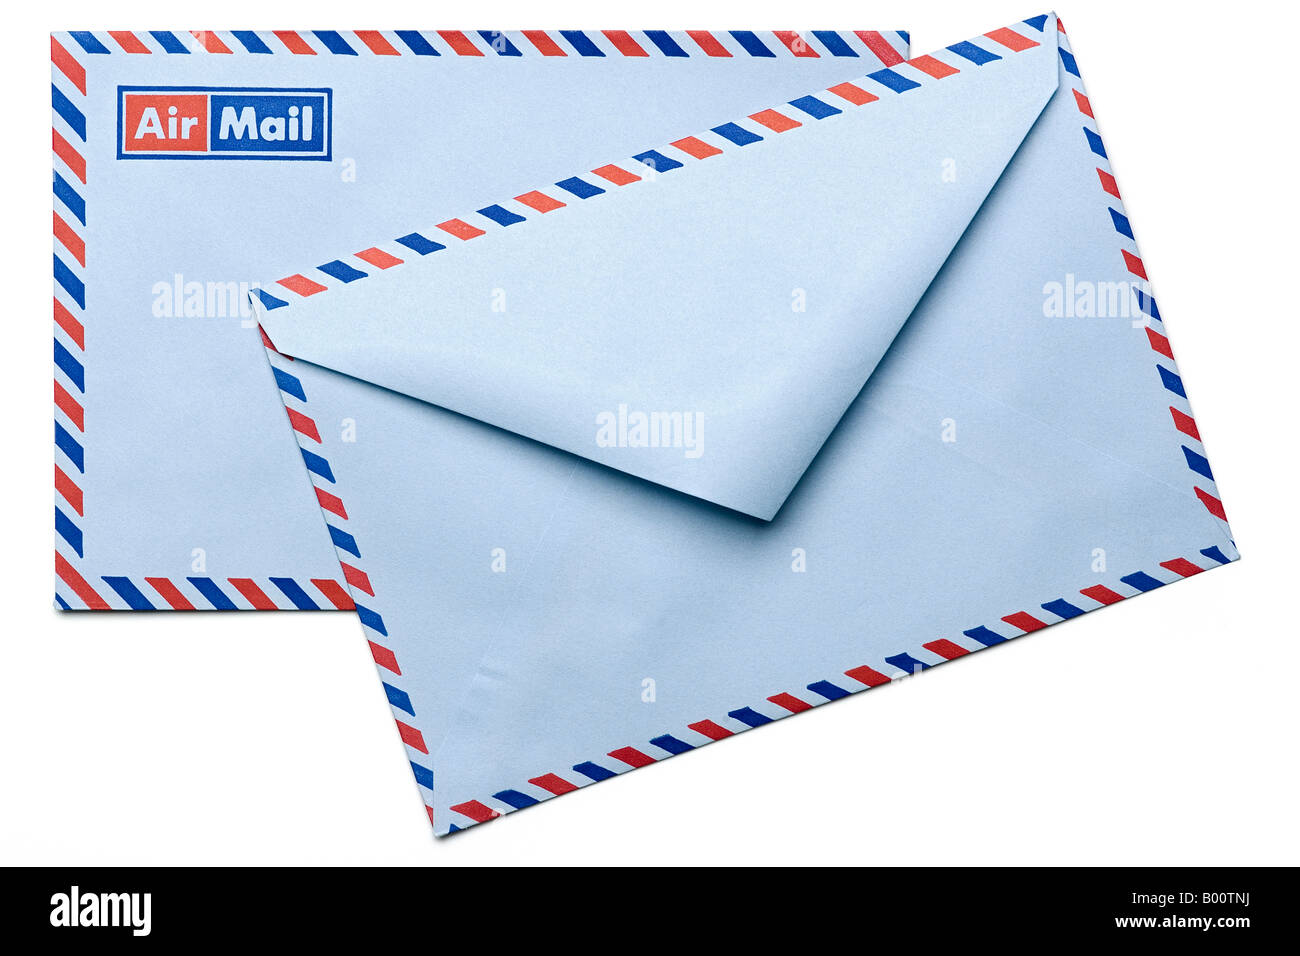 Vorder- und Rückseite der Luftpost Umschlag Stockfotografie - Alamy